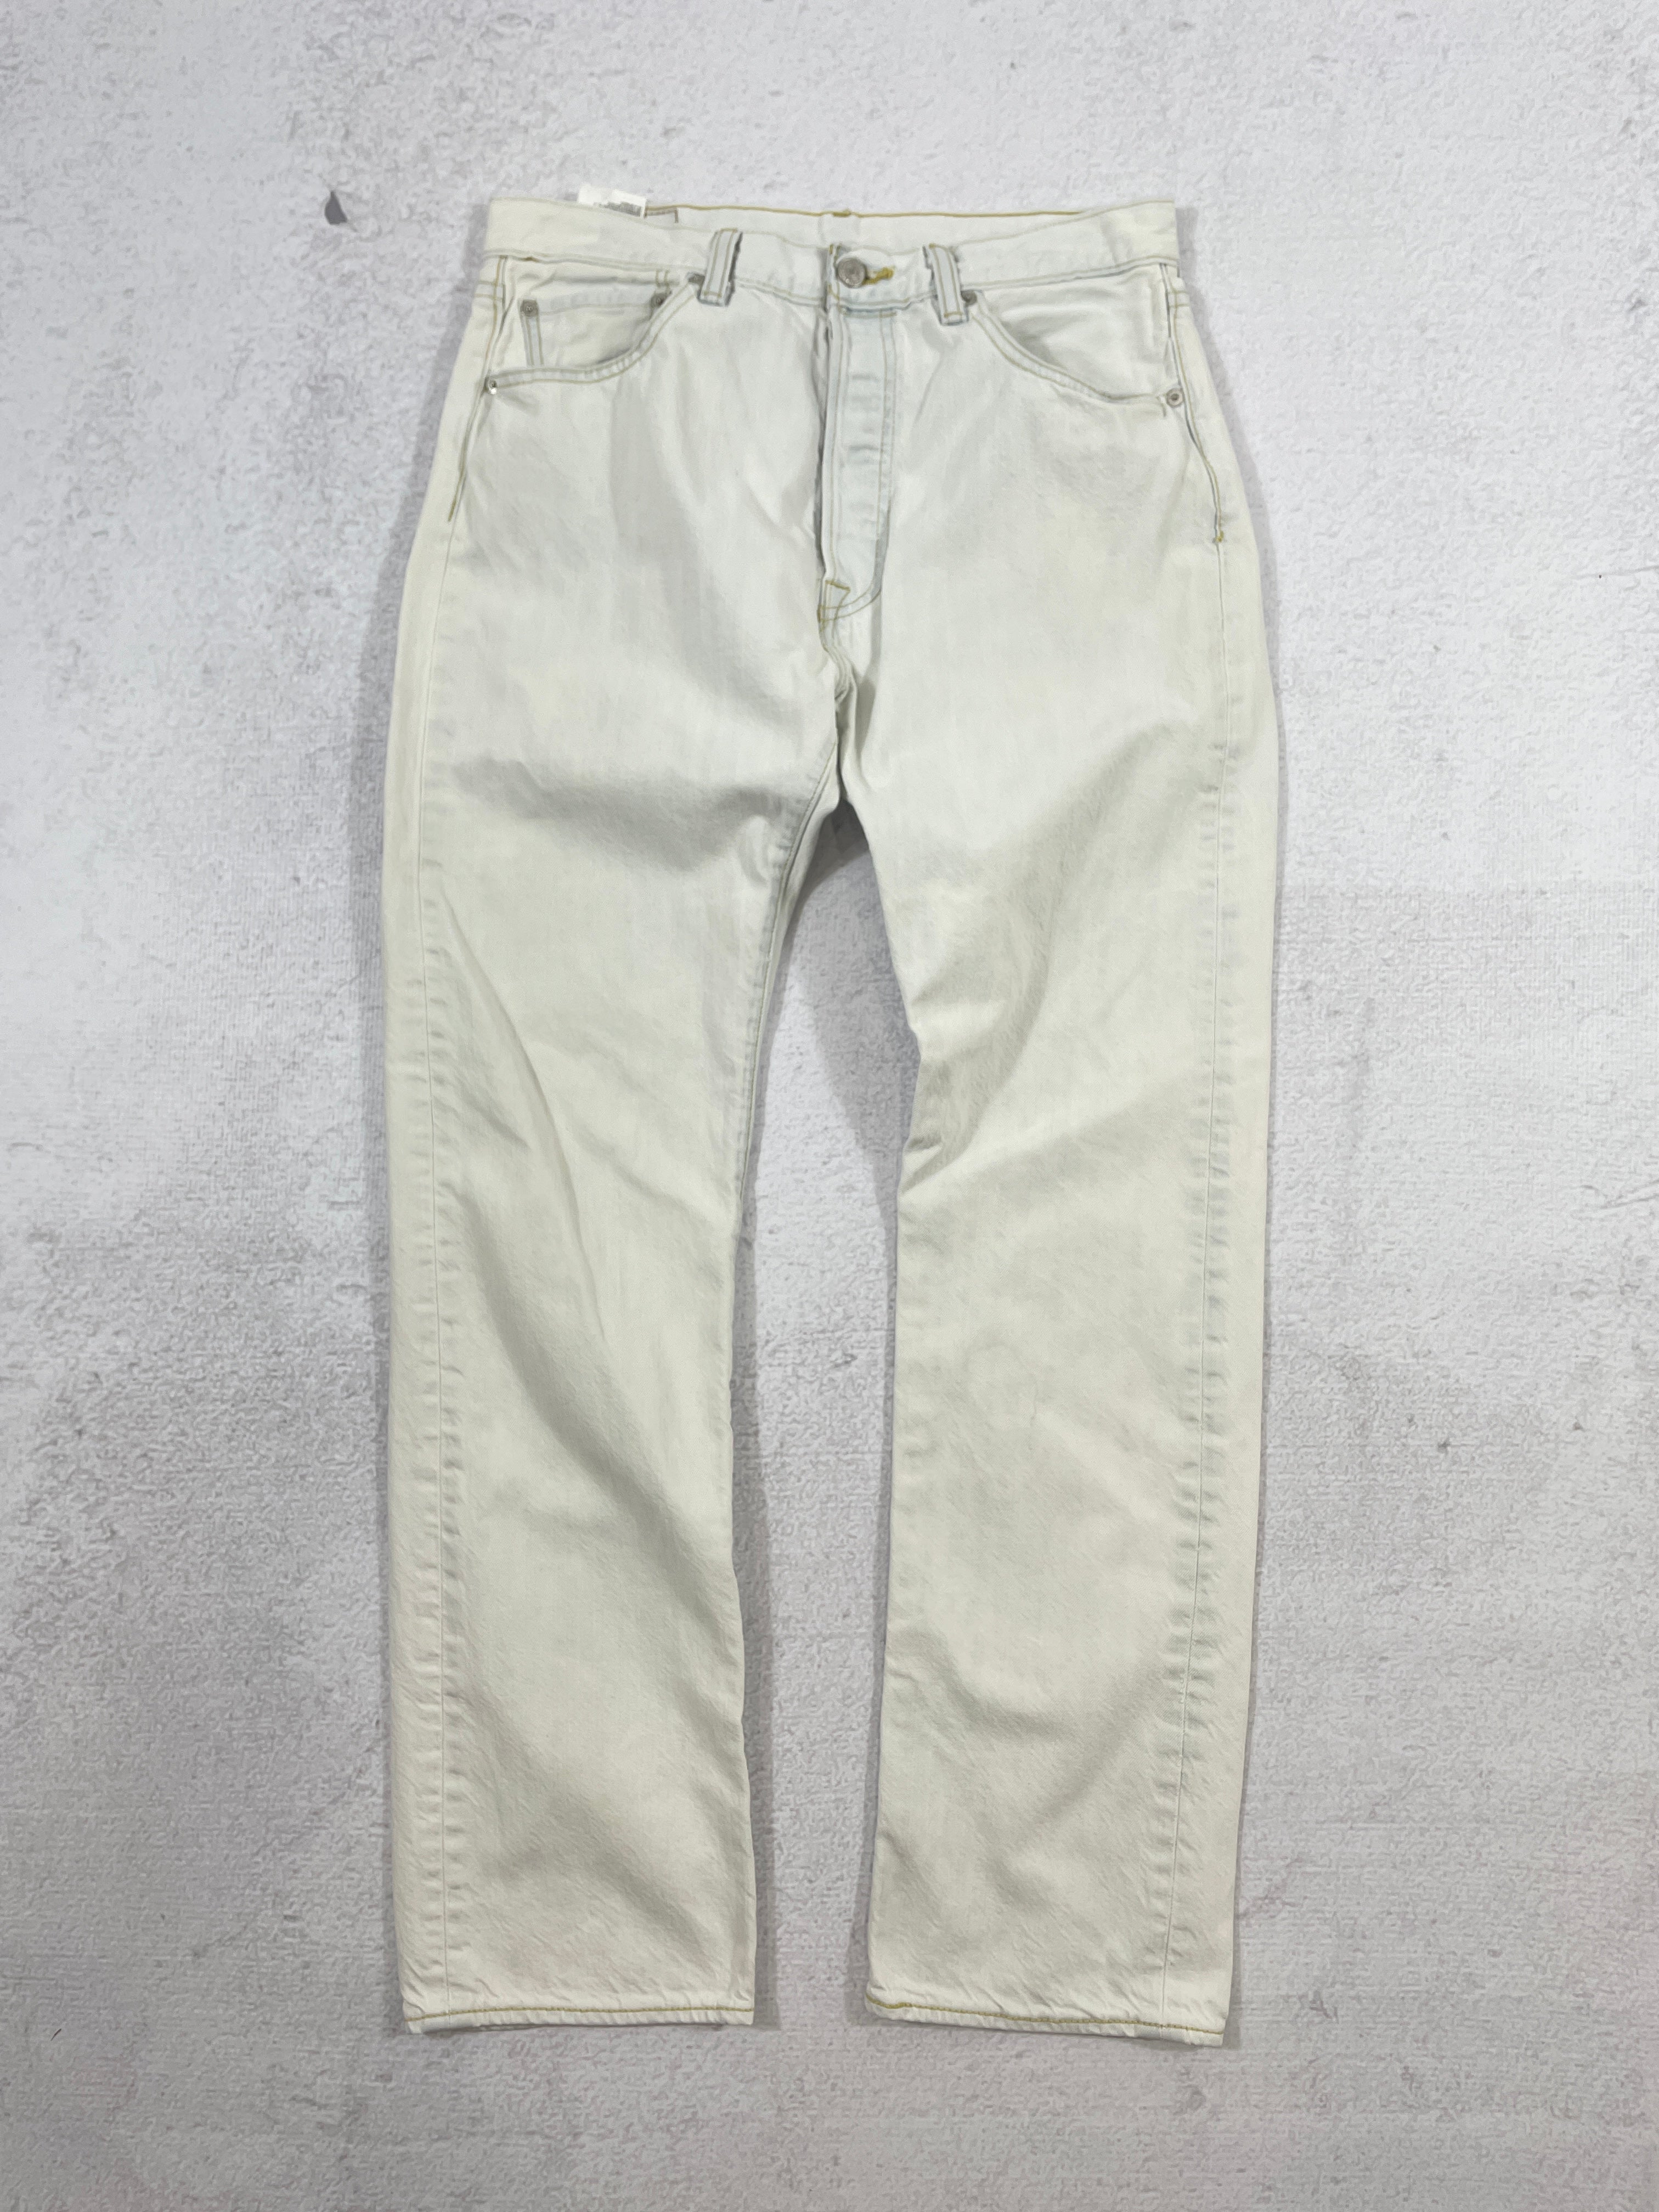 Vintage Levis 501 Jeans - Men's 33Wx32L